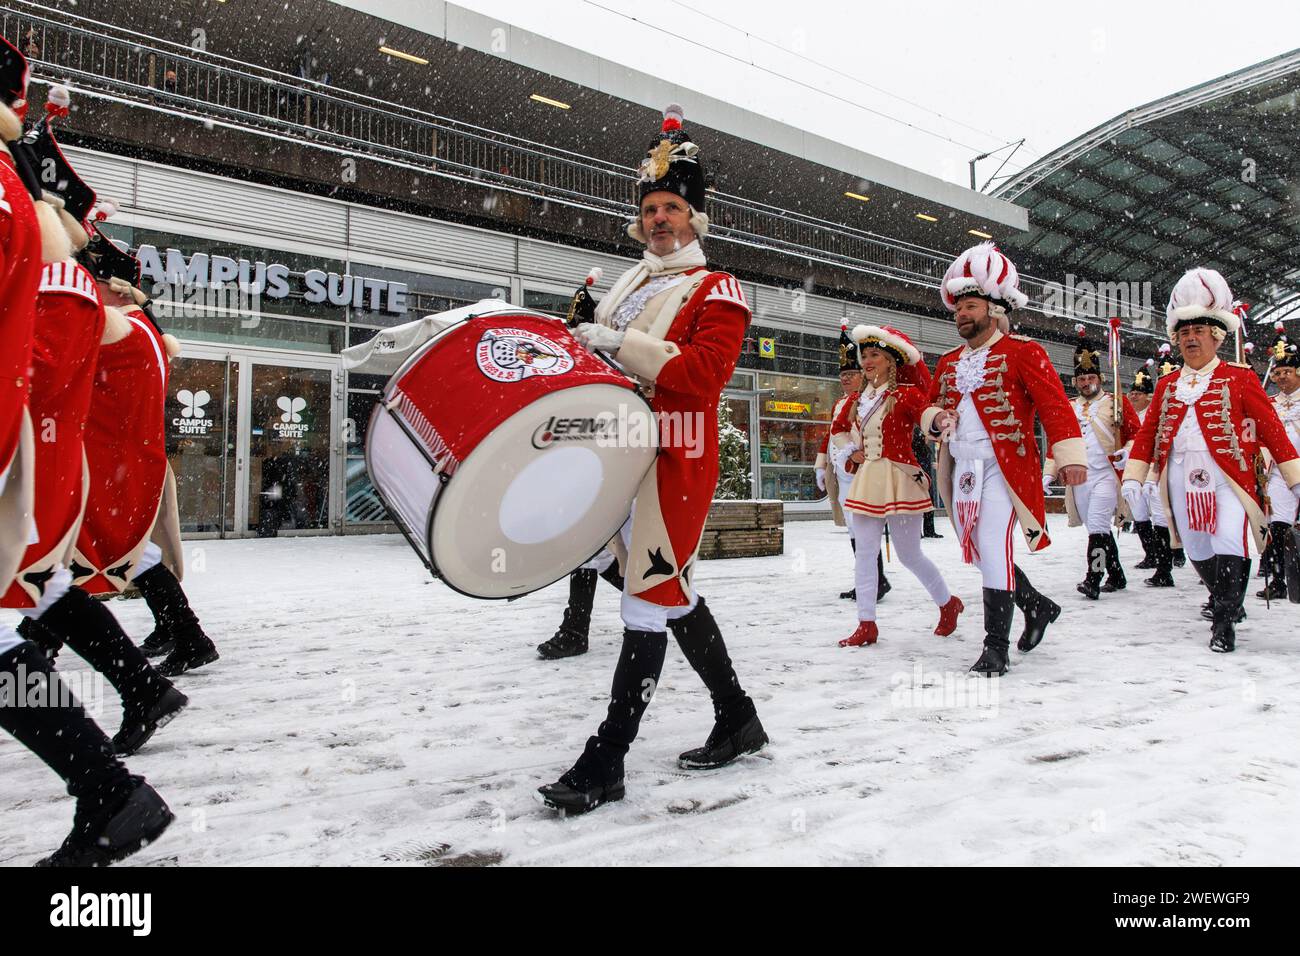 Banda di marcia della Rote Funken (una società di carnevale) su Breslauer Platz di fronte alla stazione centrale, inverno, neve, Colonia, Germania. Spielmannszu Foto Stock